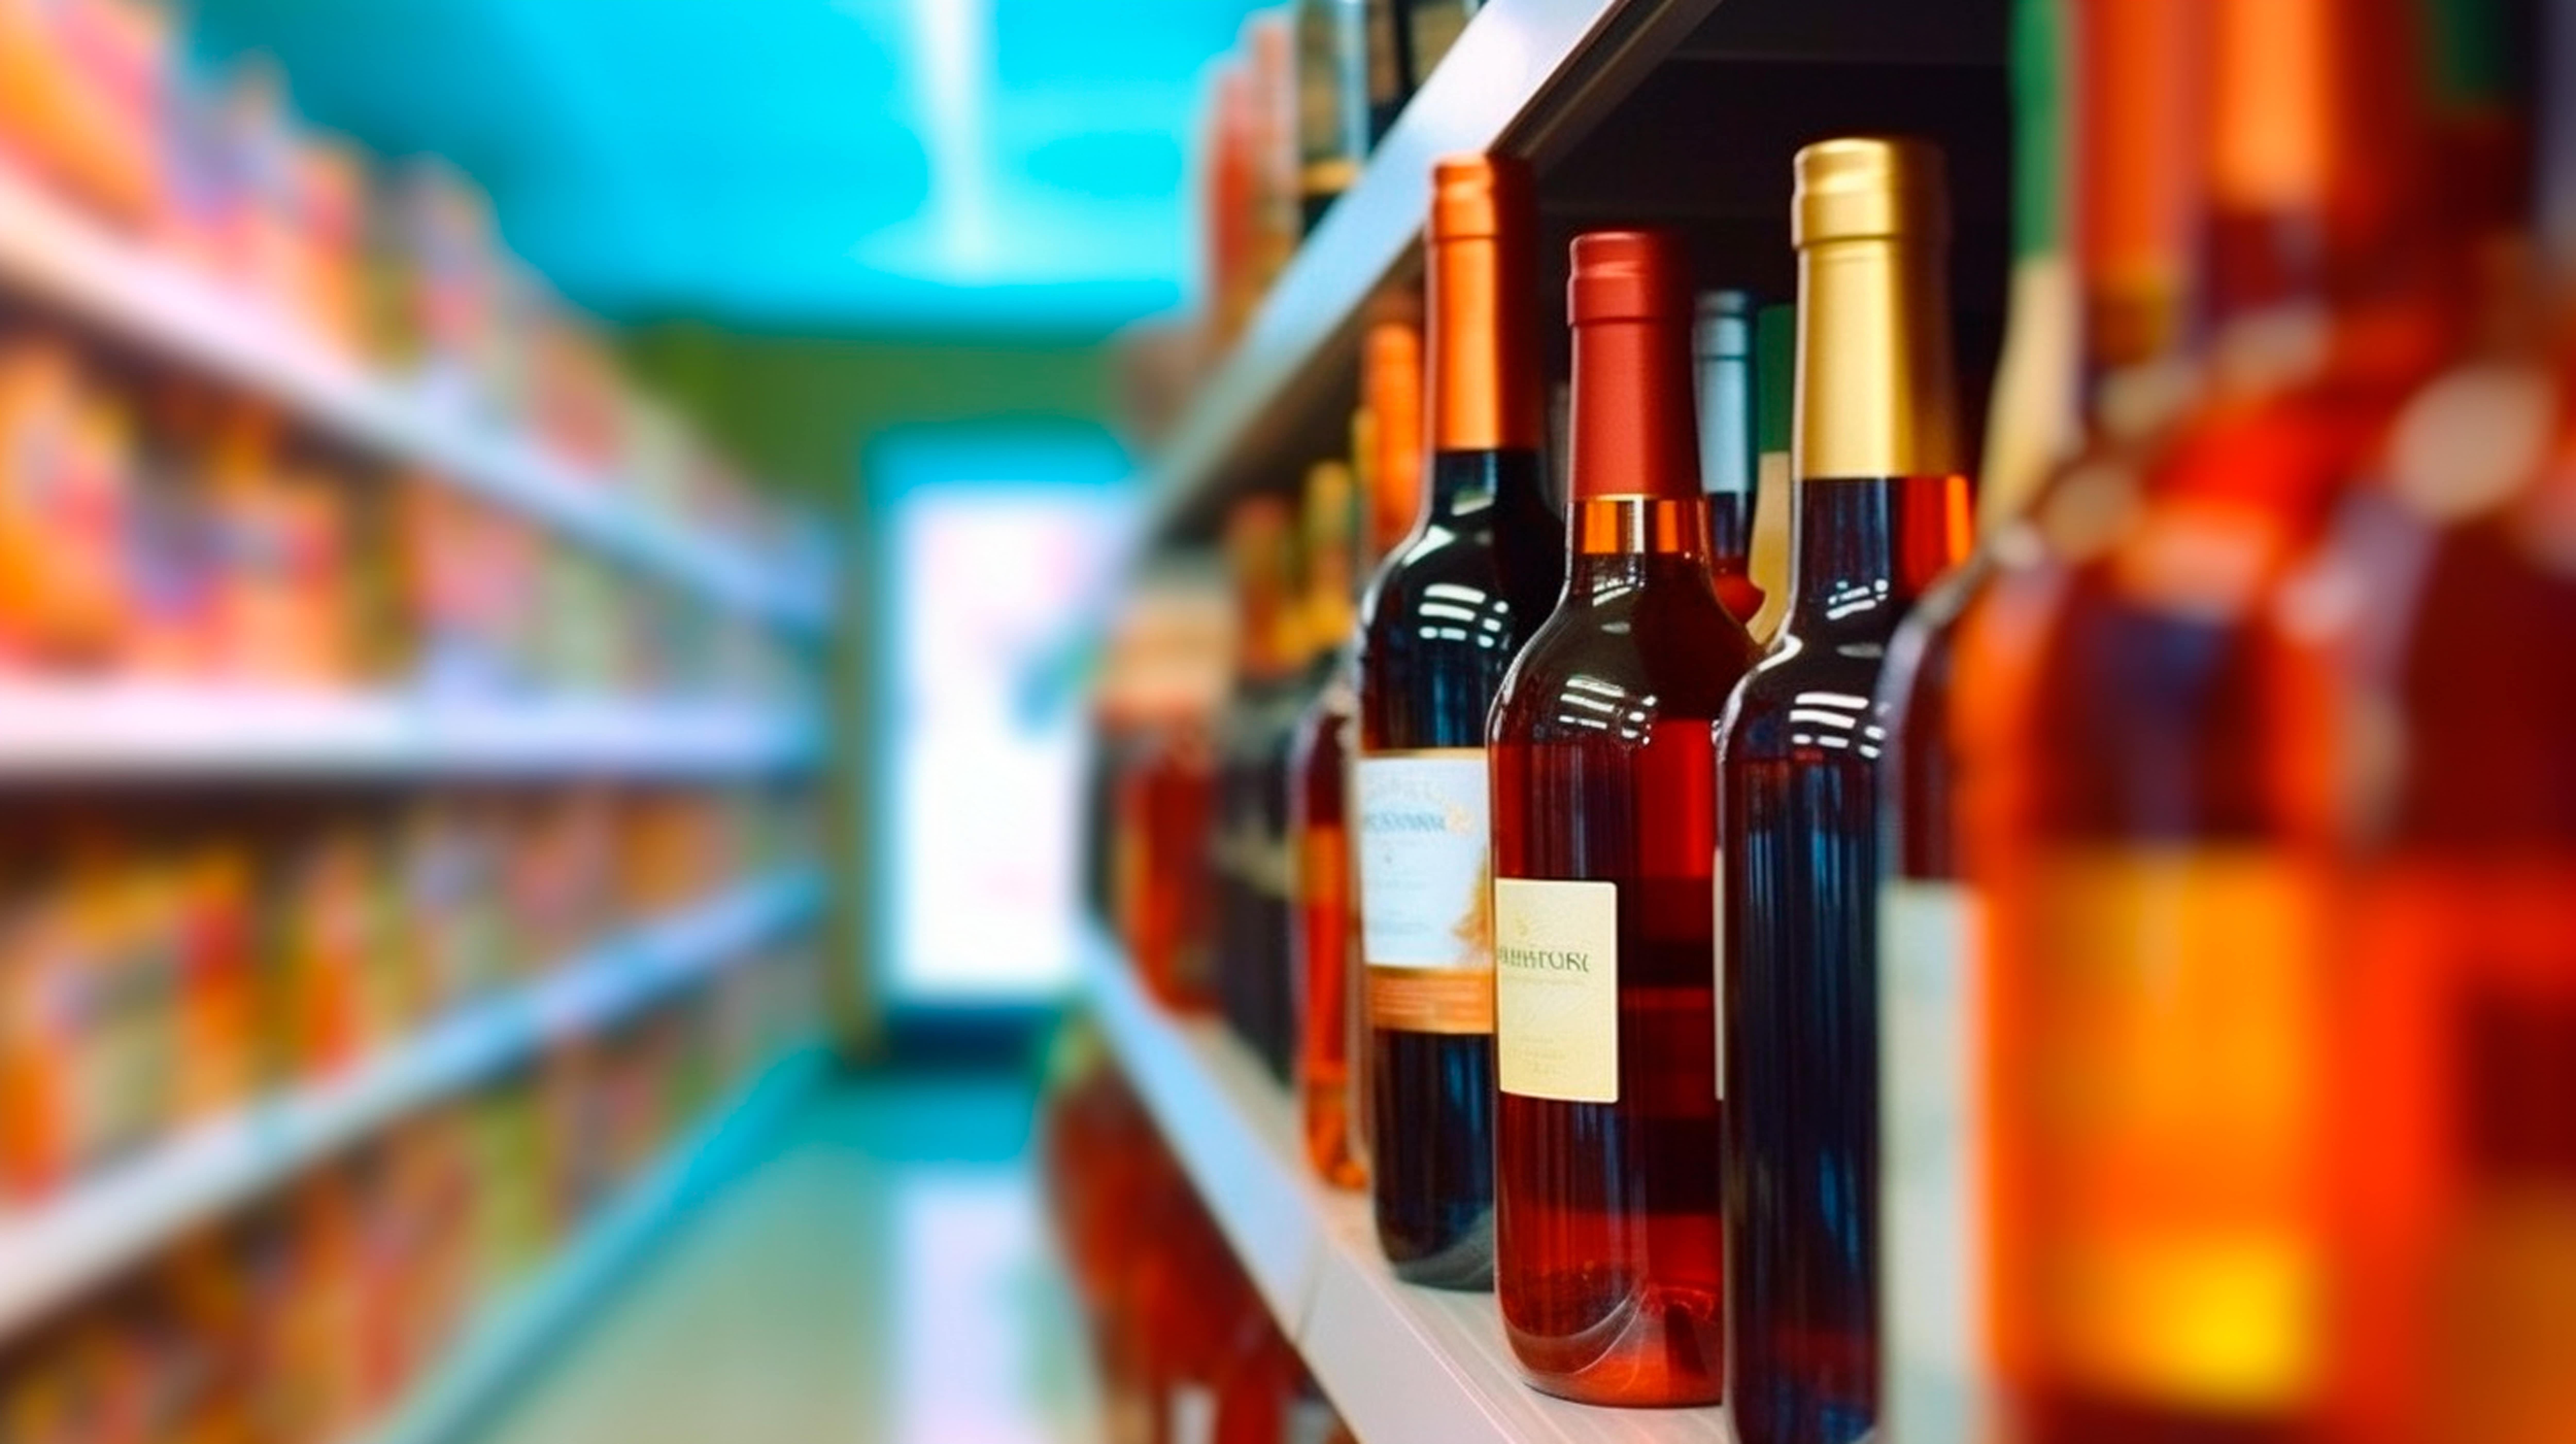 Los vinos desalcoholizados también deben cumplir la nueva normativa de etiquetado de vinos